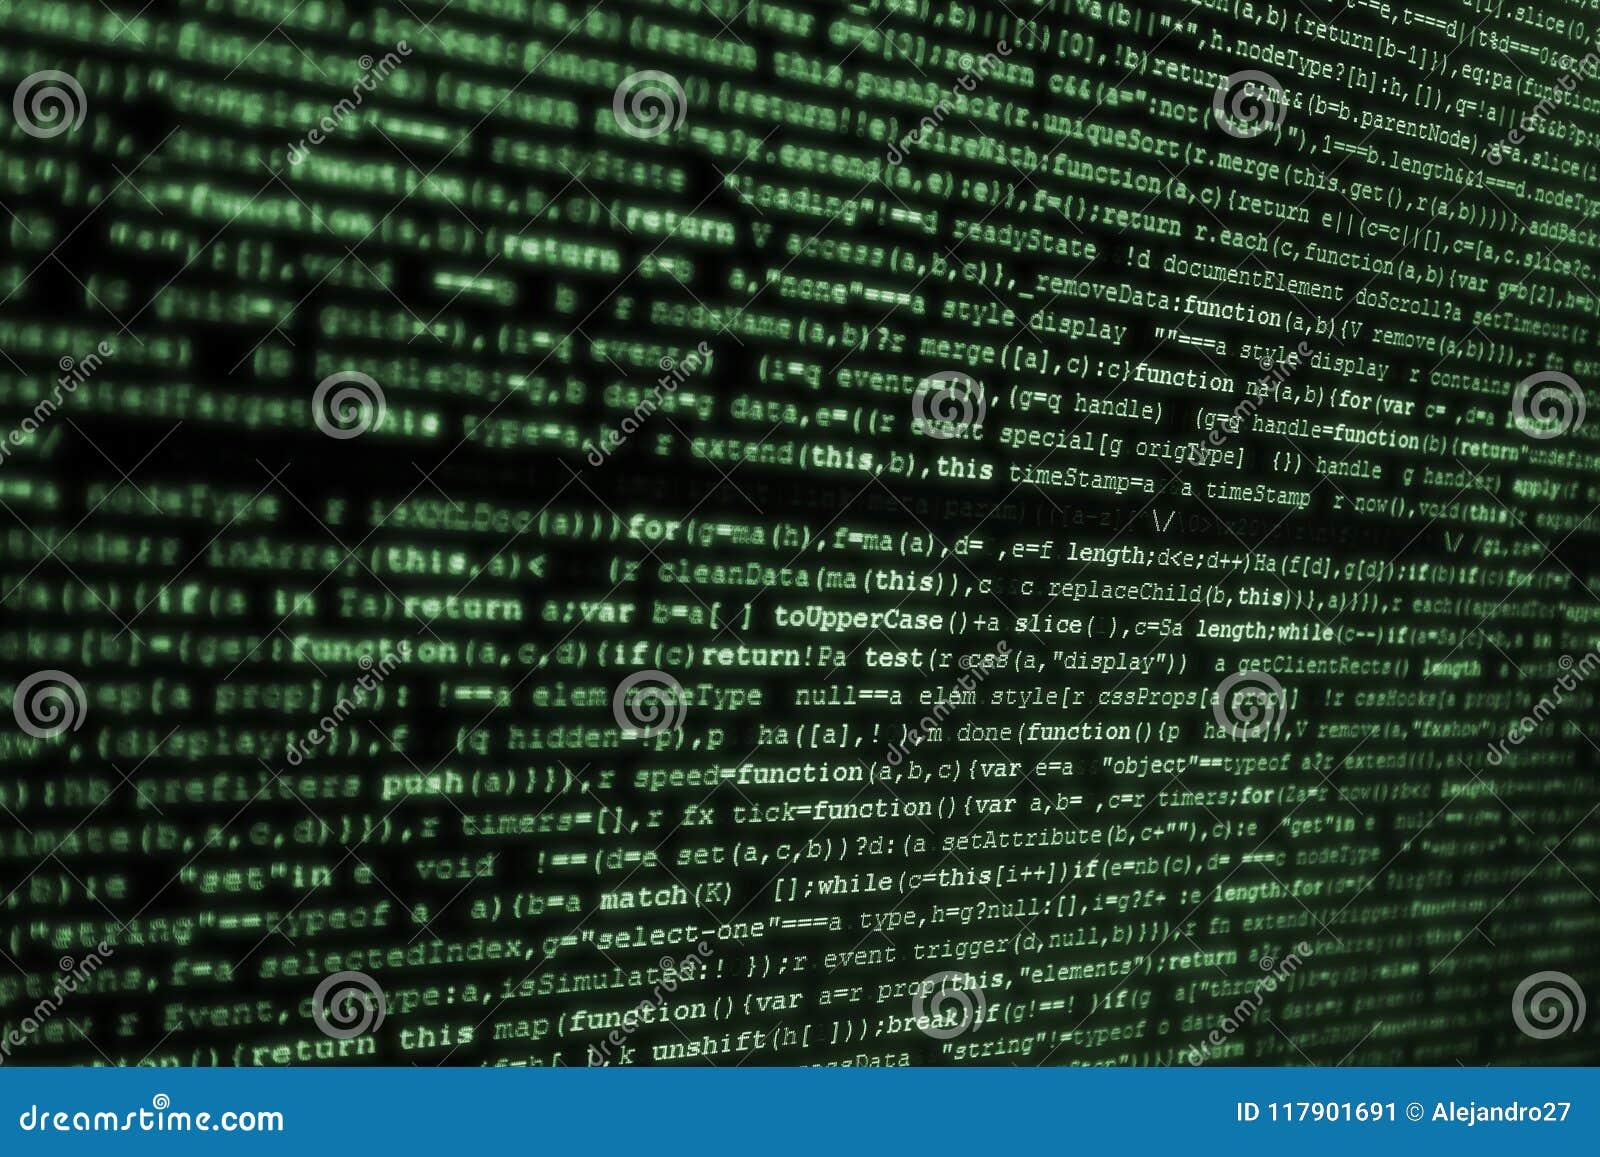 Màn hình máy tính hiển thị mã HTML màu xanh trên nền đen là một hình ảnh đặc biệt đầy nghệ thuật. Mã màu xanh lá có thể làm cho các trang web trông rất sáng tạo và thu hút. Hãy đón xem các hình ảnh liên quan đến mã màu nền xanh lá trong các mã HTML và tìm hiểu cách chúng có thể được áp dụng trong thiết kế trang web của bạn.